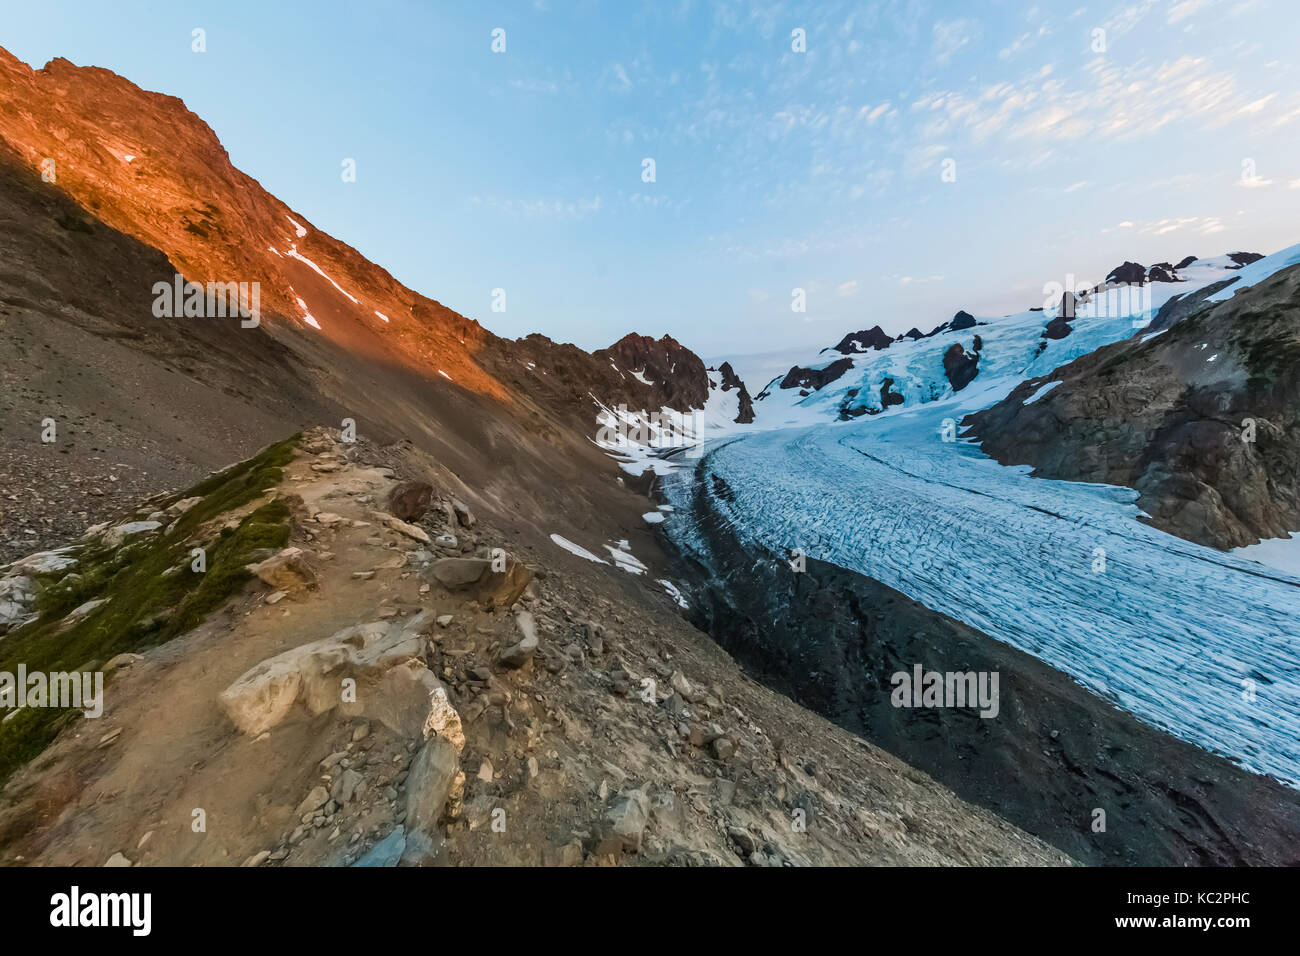 Sonnenuntergang Licht auf dem Berg Merkur mit blauen Gletscher und den Olymp  in der dramatischen Einstellung am Ende der Hoh River Trail in der  Olympischen Nationa Stockfotografie - Alamy